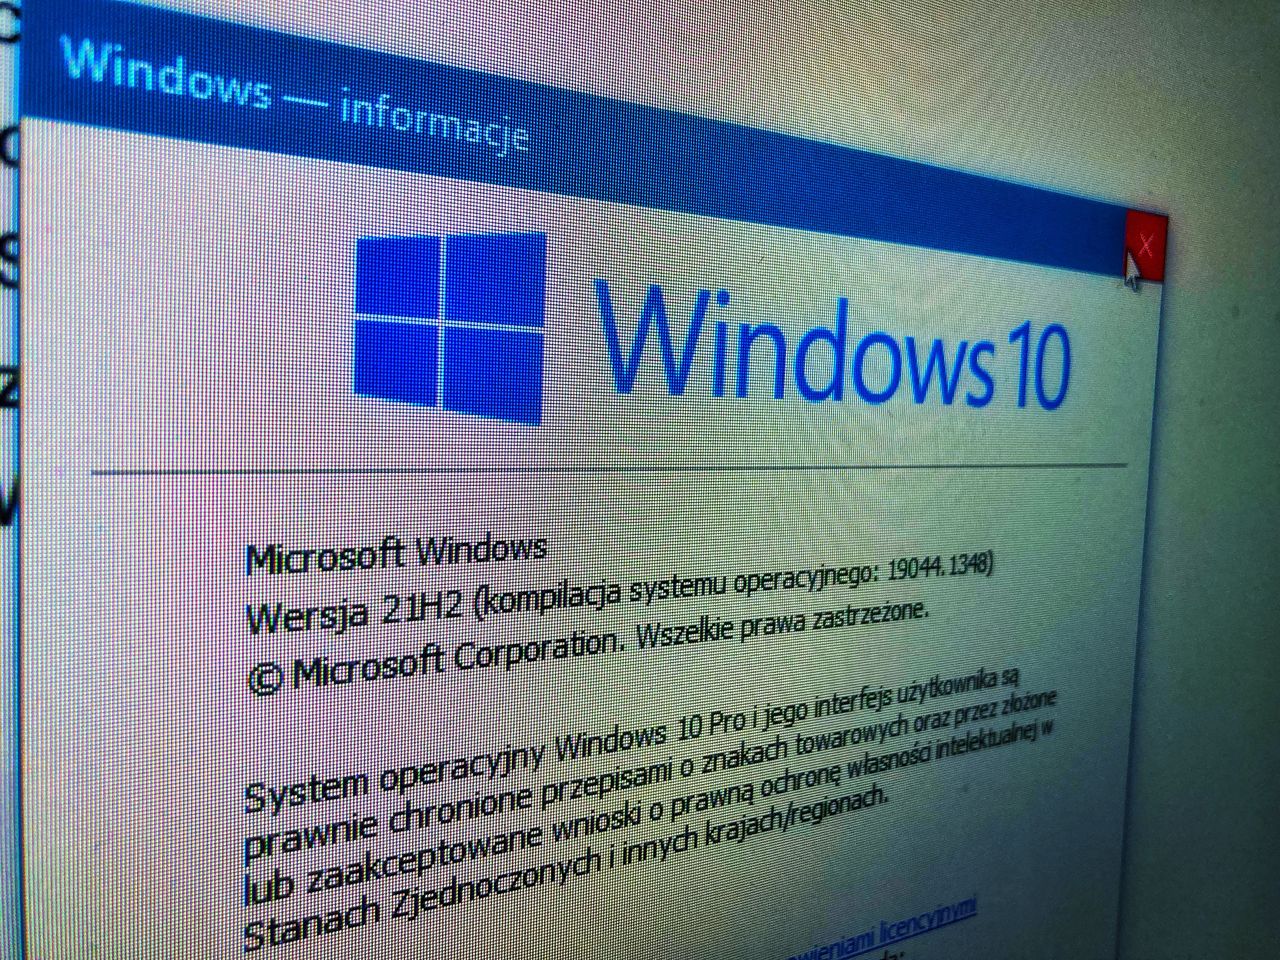 Windows 10 21H2 LTSC: Jedenastka zawiodła? - Windows 10 21H2 LTSC: Jedenastka zawiodła?